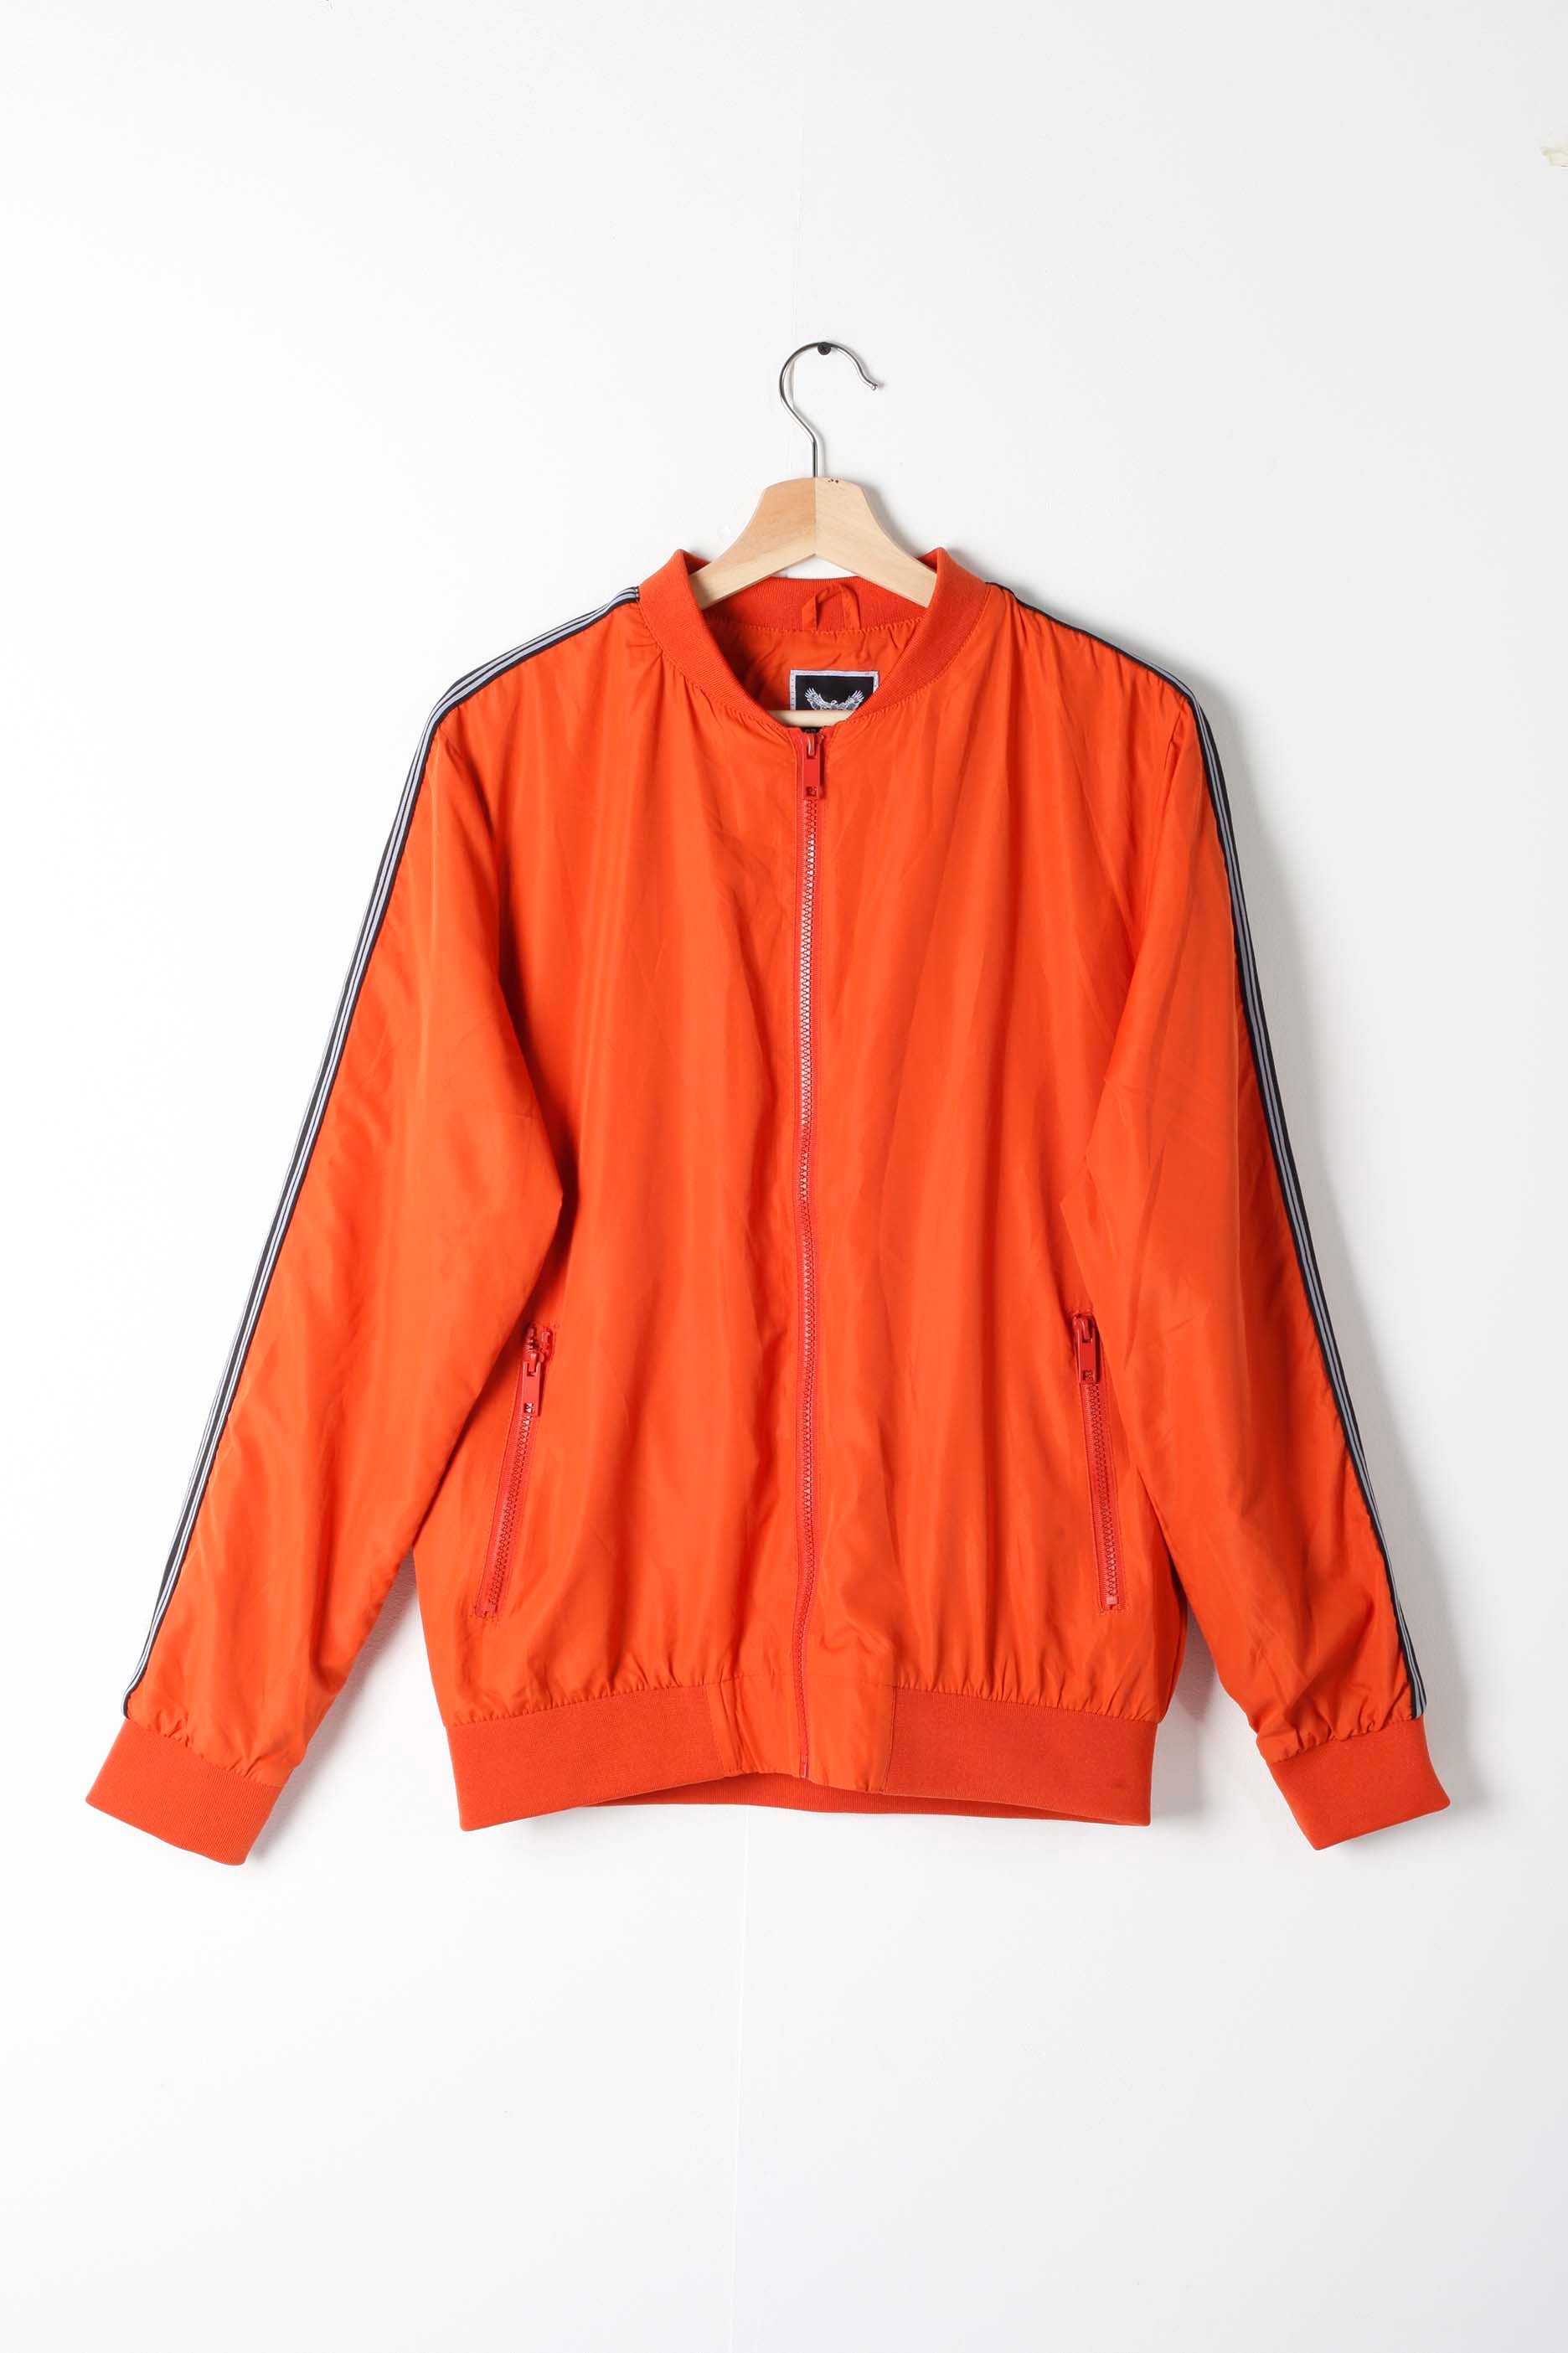 Orange Bomber Jacket (Medium)